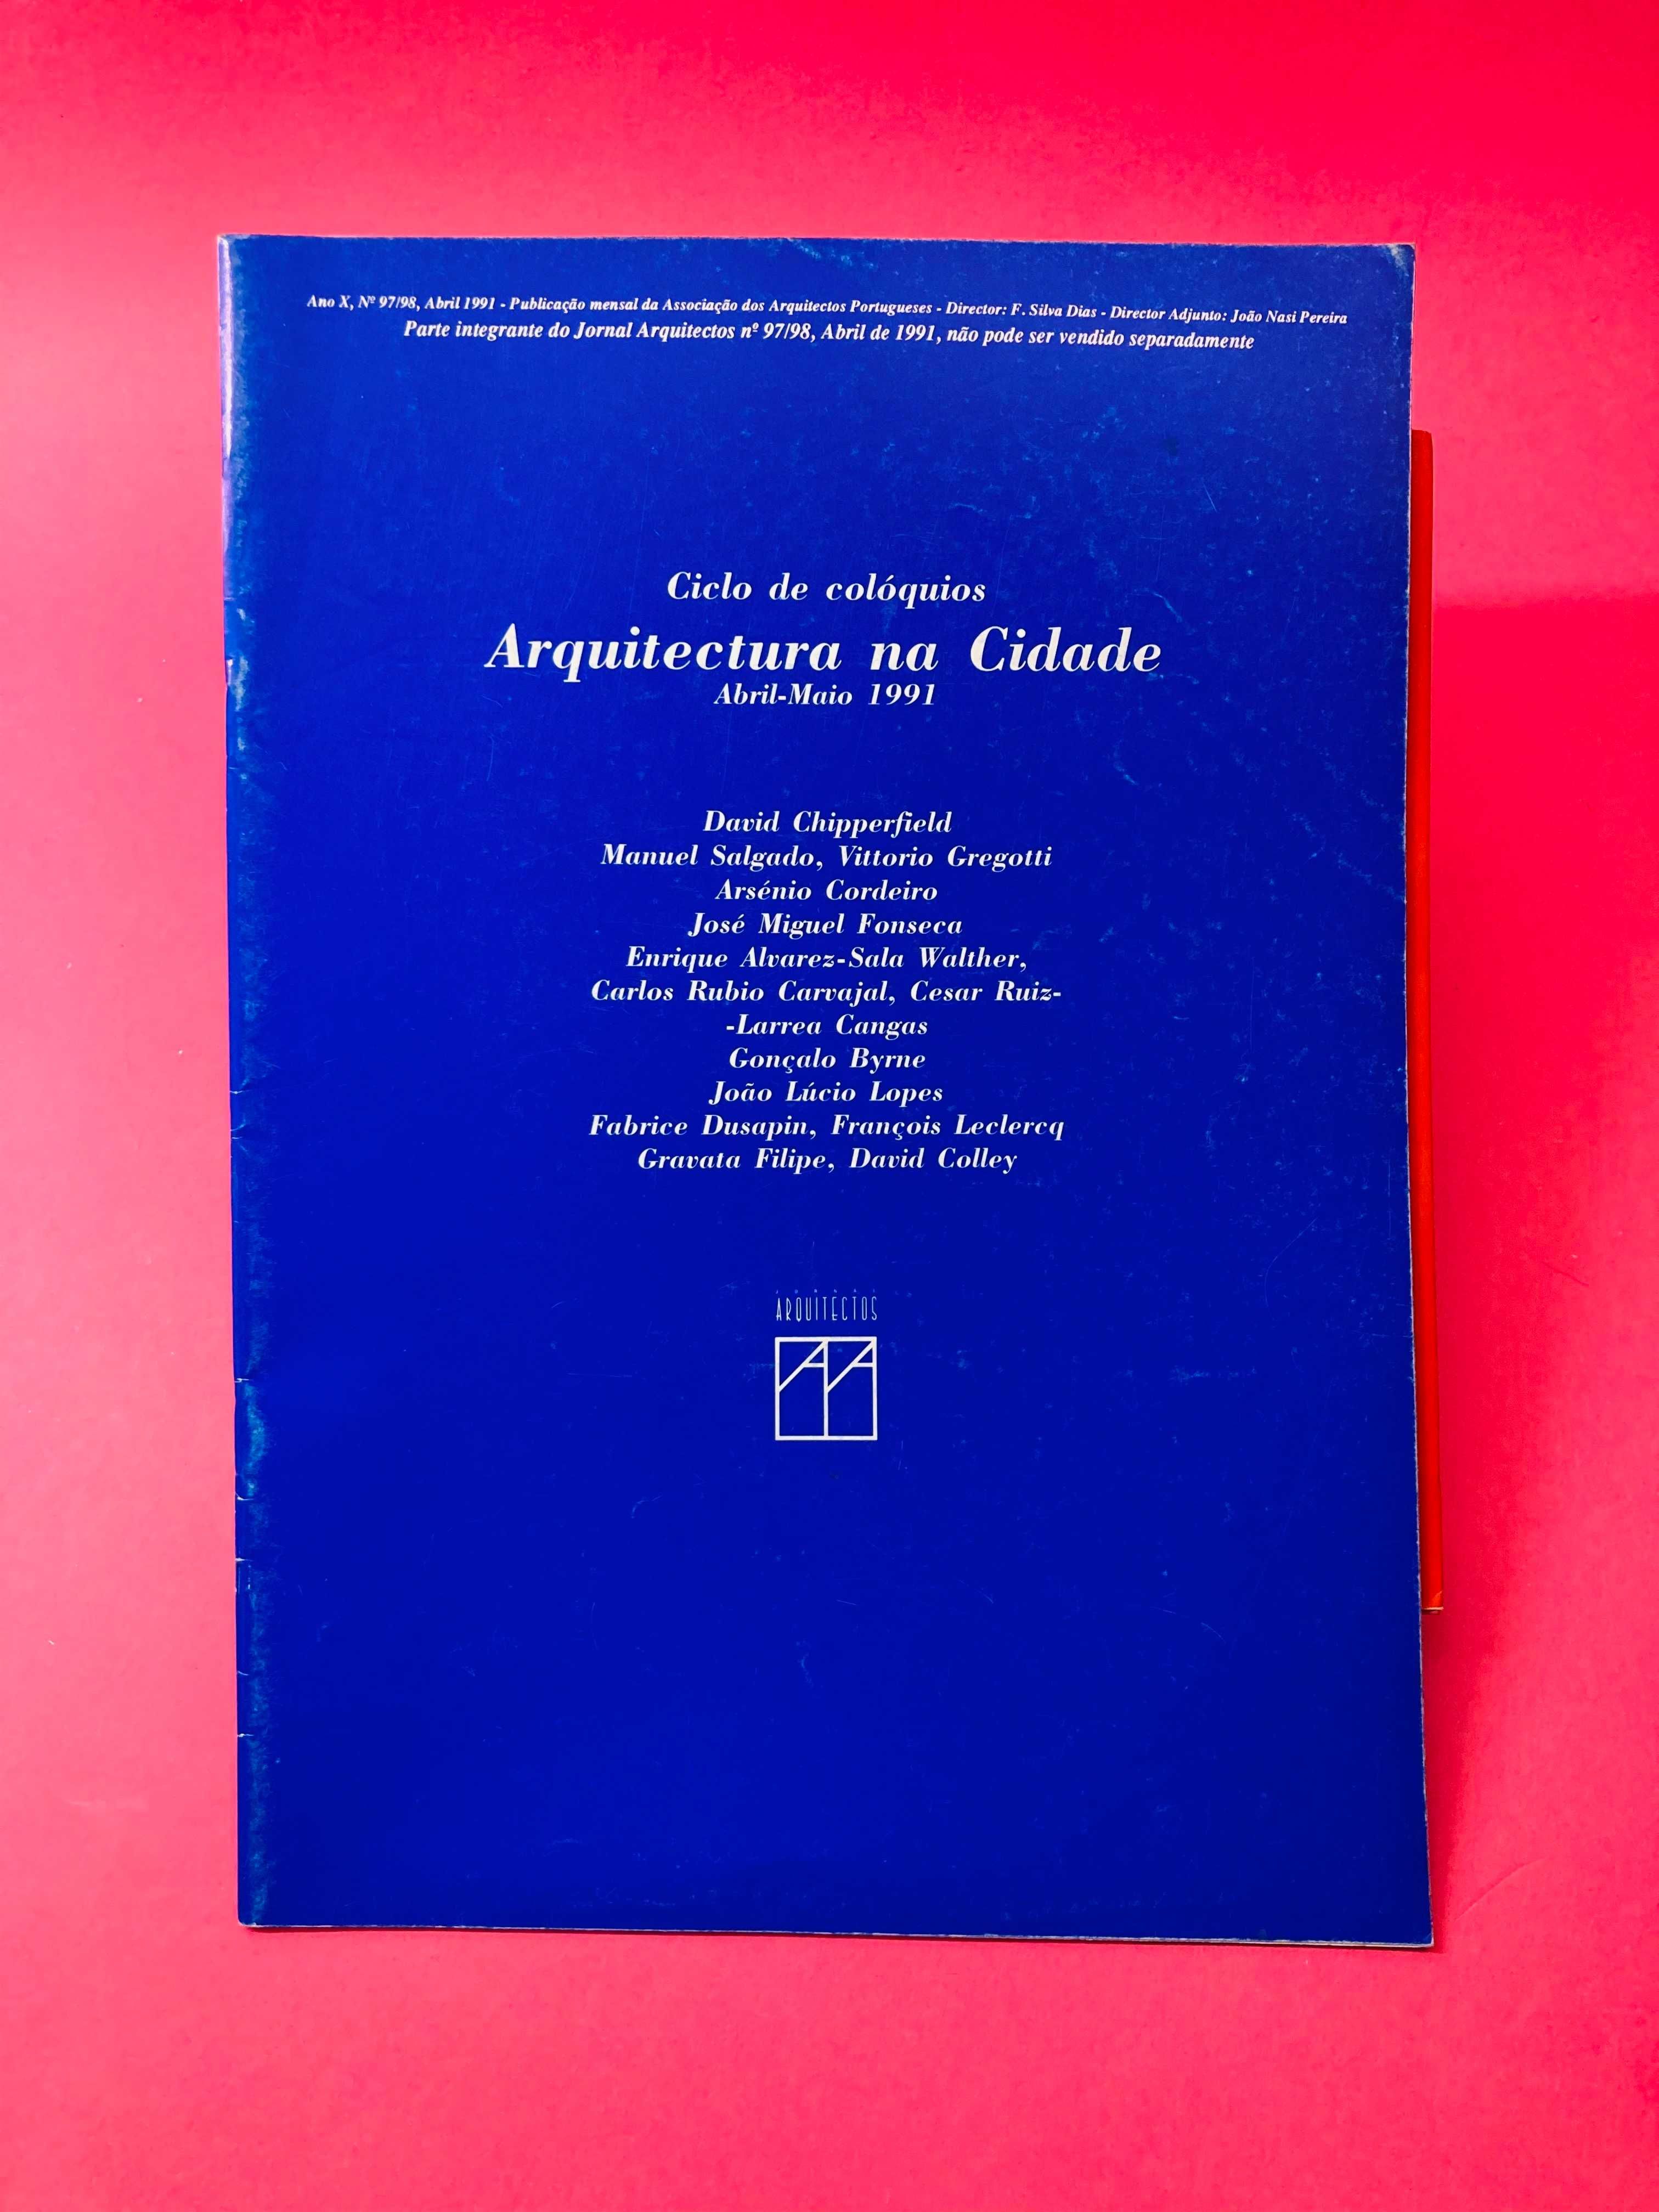 Jornal Arquitectos: Arquitetura na Cidade, Nº97/98, Abril 1991